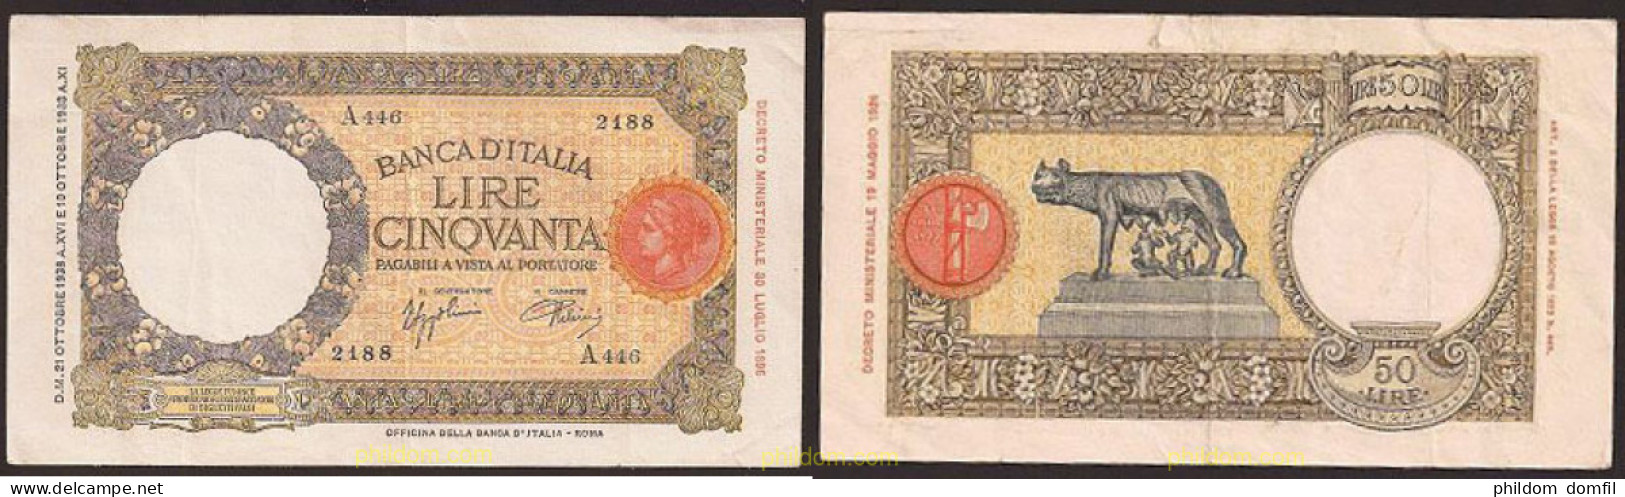 118 ITALIA 1938 50 Lire BANCONOTA DA LIRE 50 VITTORIO EMANUELE III OFFICINA L'AQUILA - Biglietti Consorziale